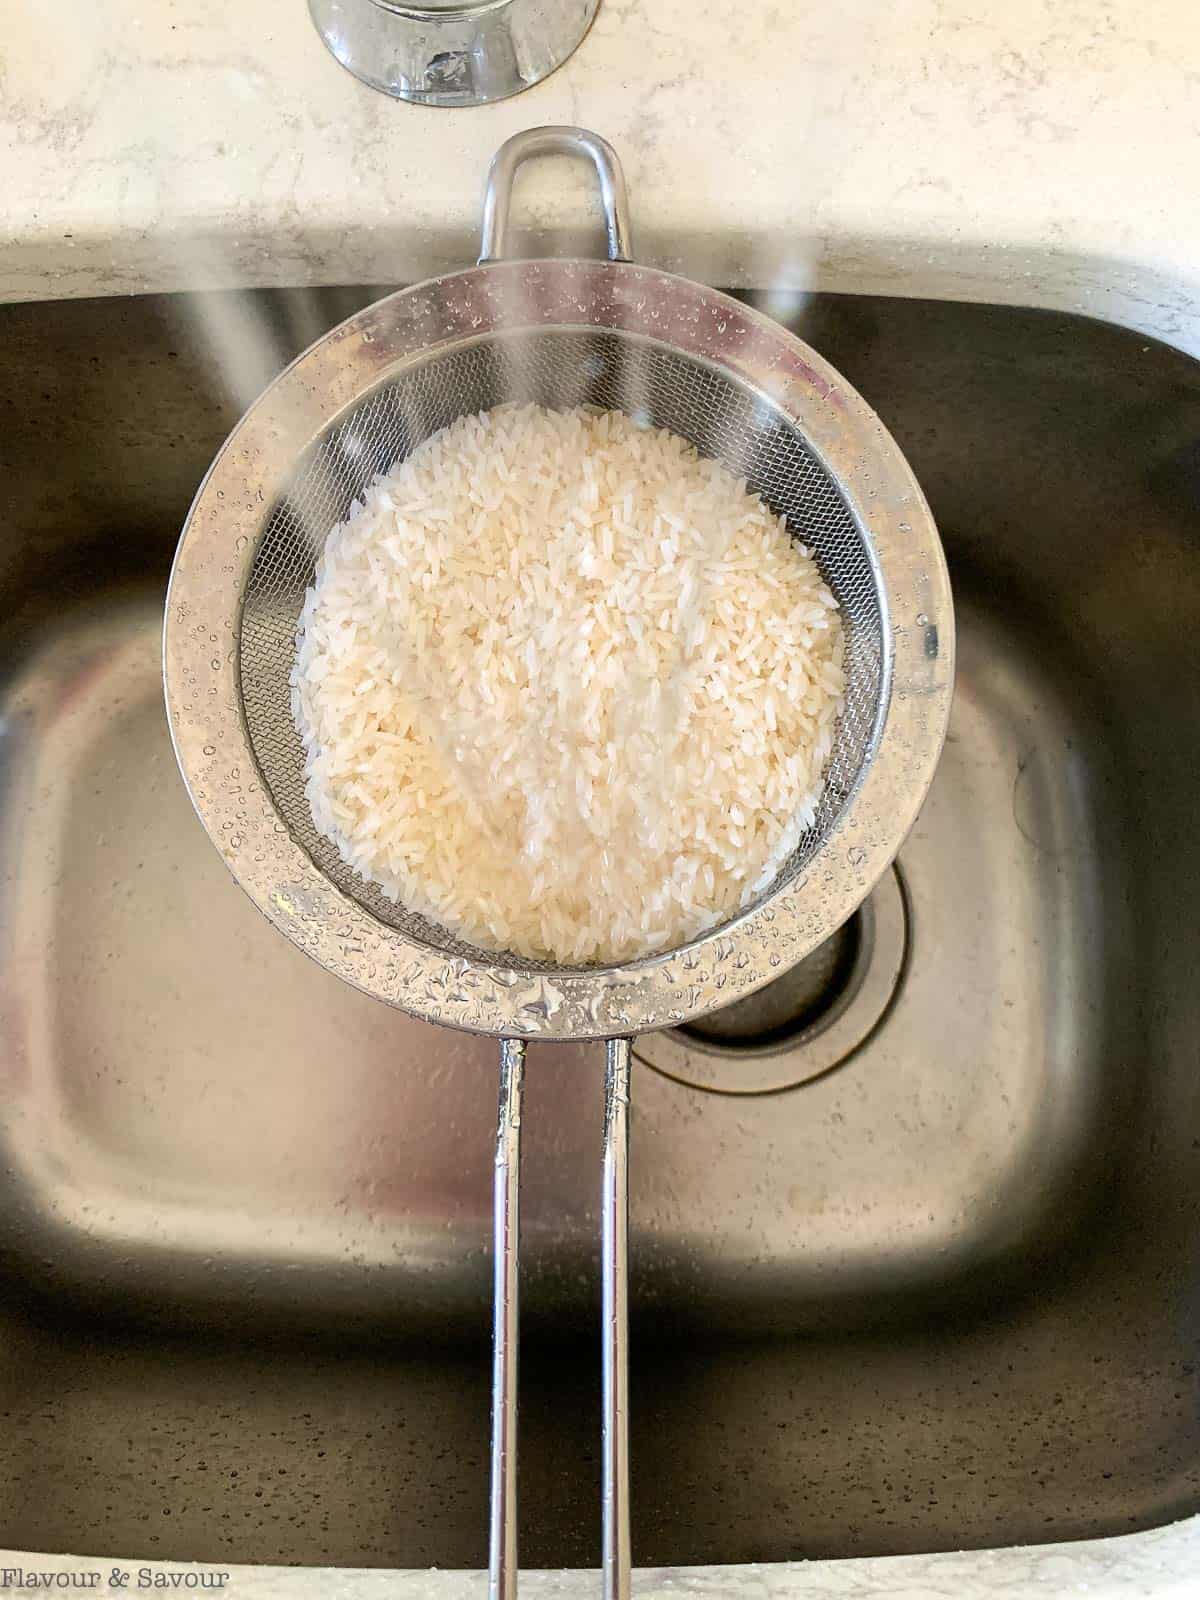 Rinsing rice through a sieve.